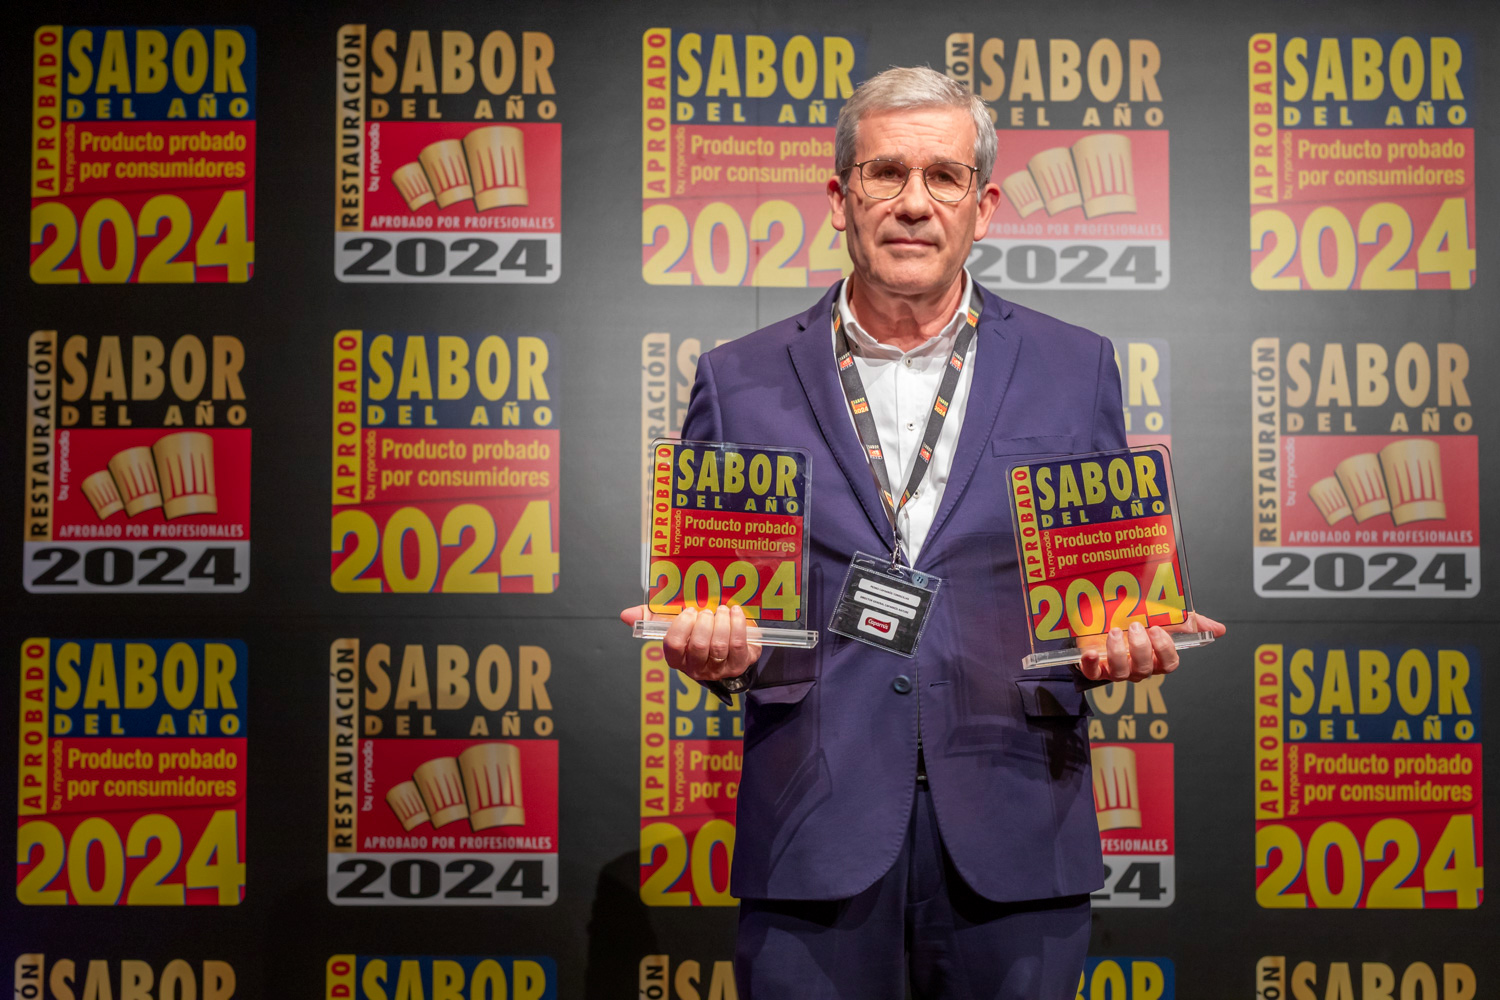 Sandía Caparrós Premium obtiene el Premio Sabor del Año por sexto año consecutivo